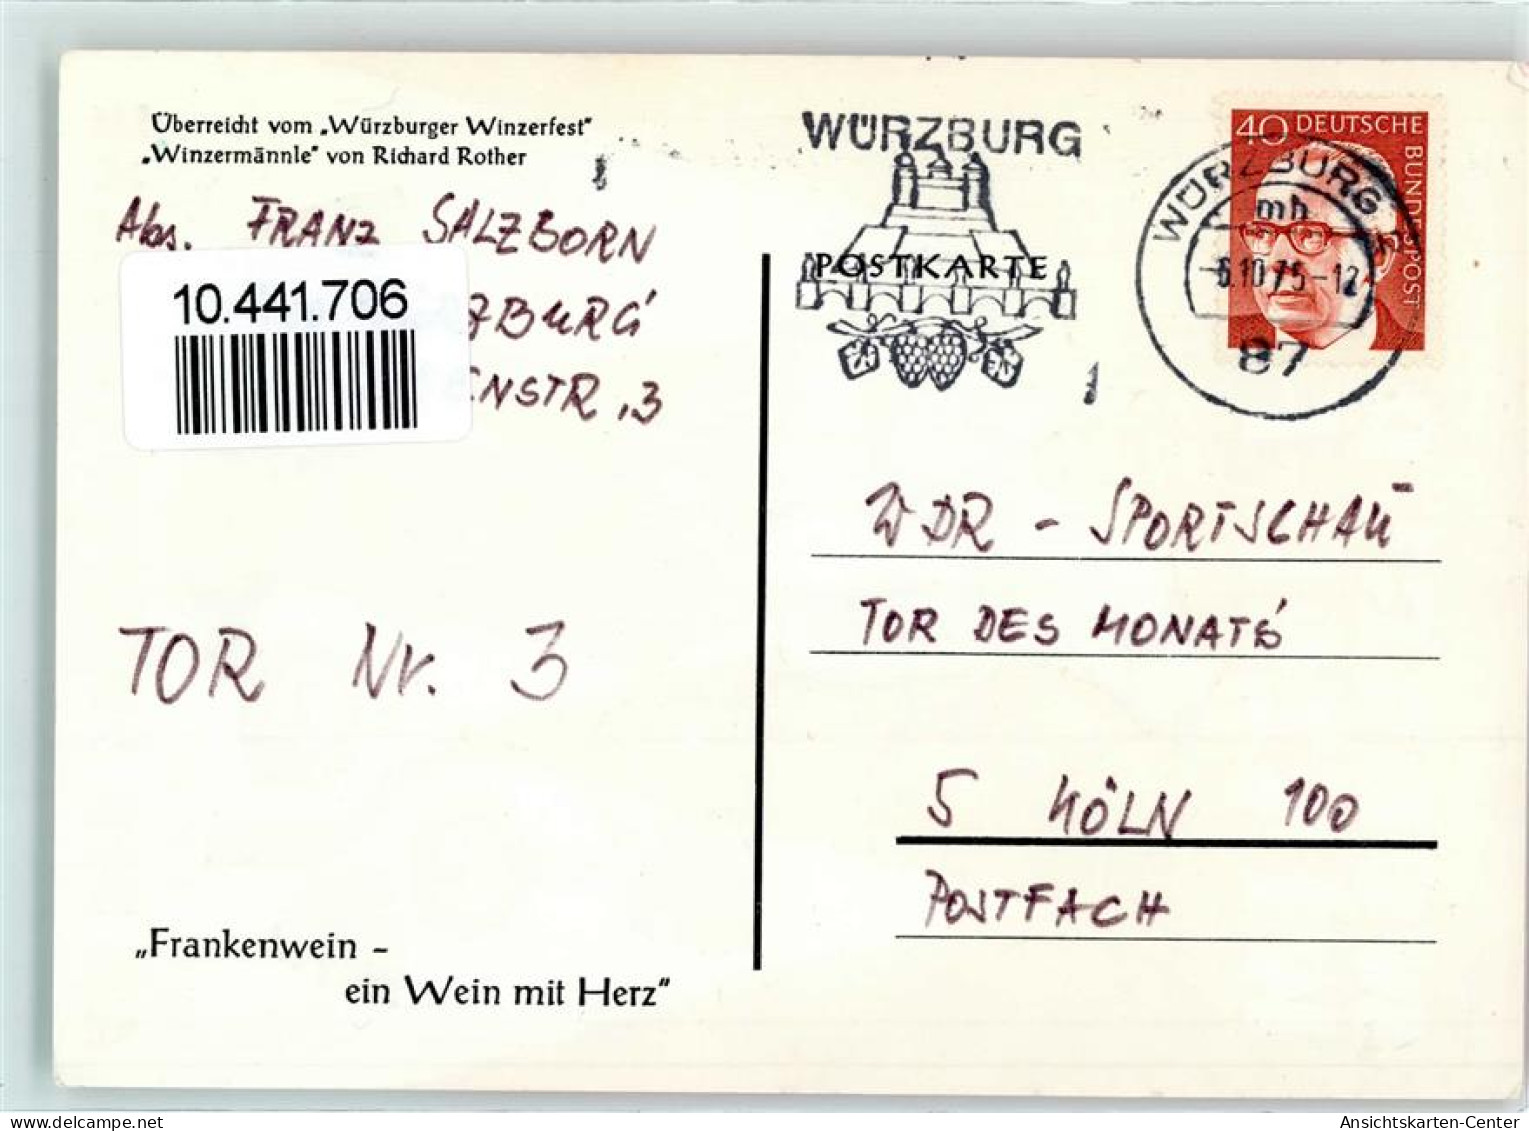 10441706 - Wuerzburg - Würzburg